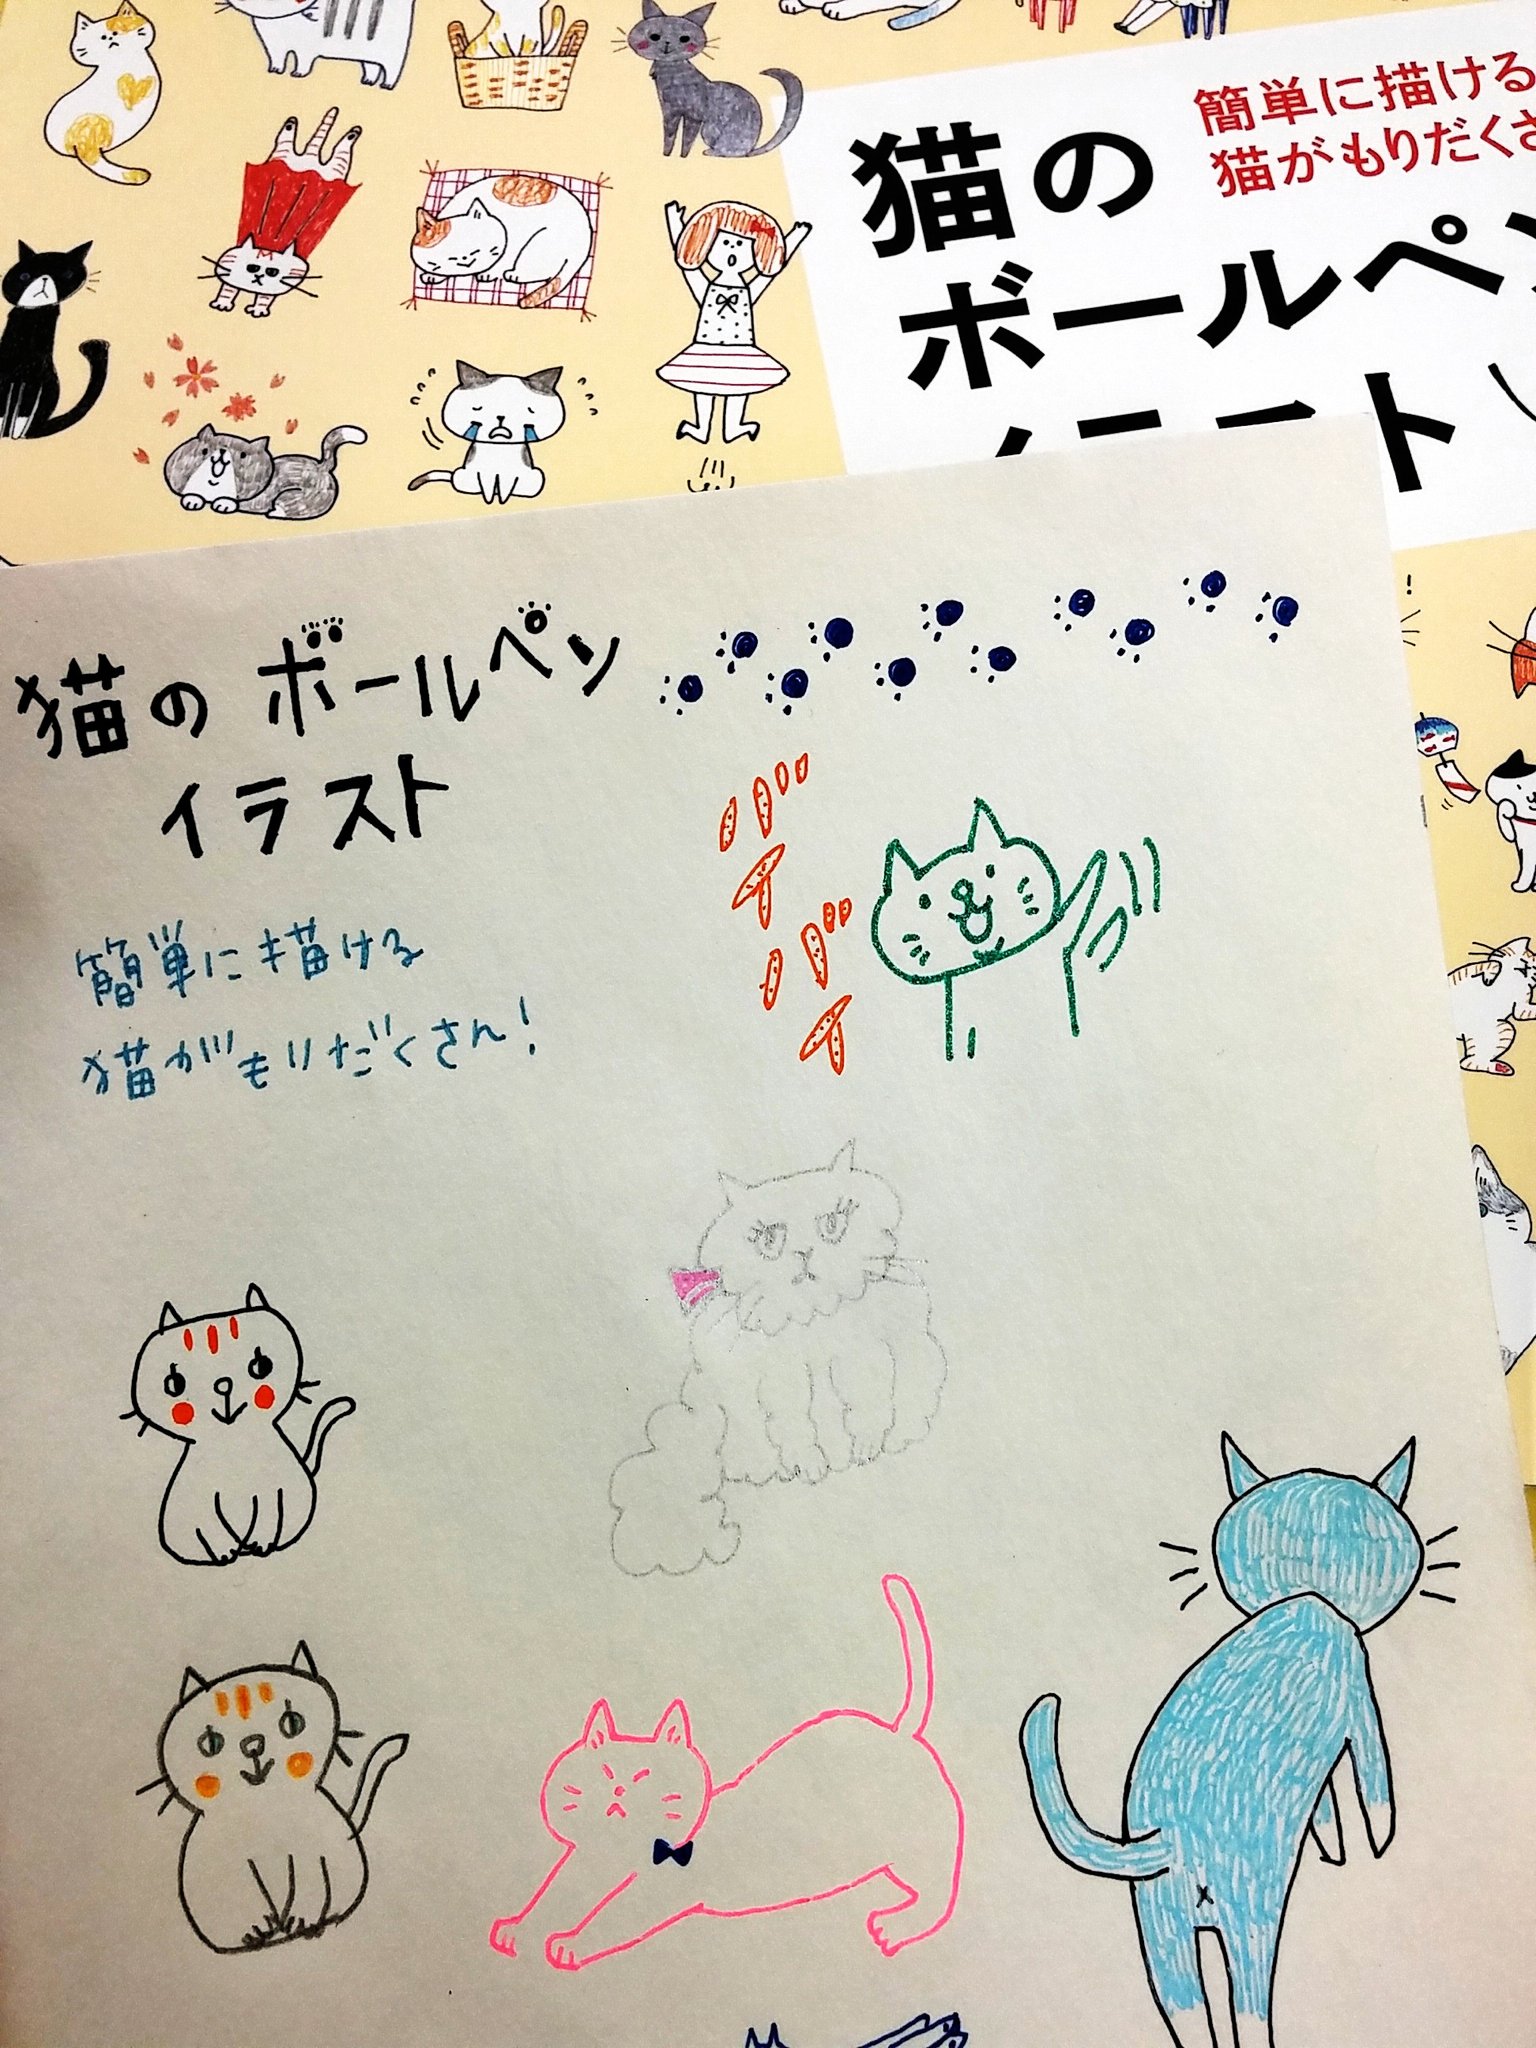 トゥールズ大阪梅田店 猫 犬のボールペンイラスト 両方お取り扱いしております ェ U ェ U バリエーション豊かです 色鉛筆で描いてみても雰囲気変わっていいですよ T Co Yapxj2qygk Twitter